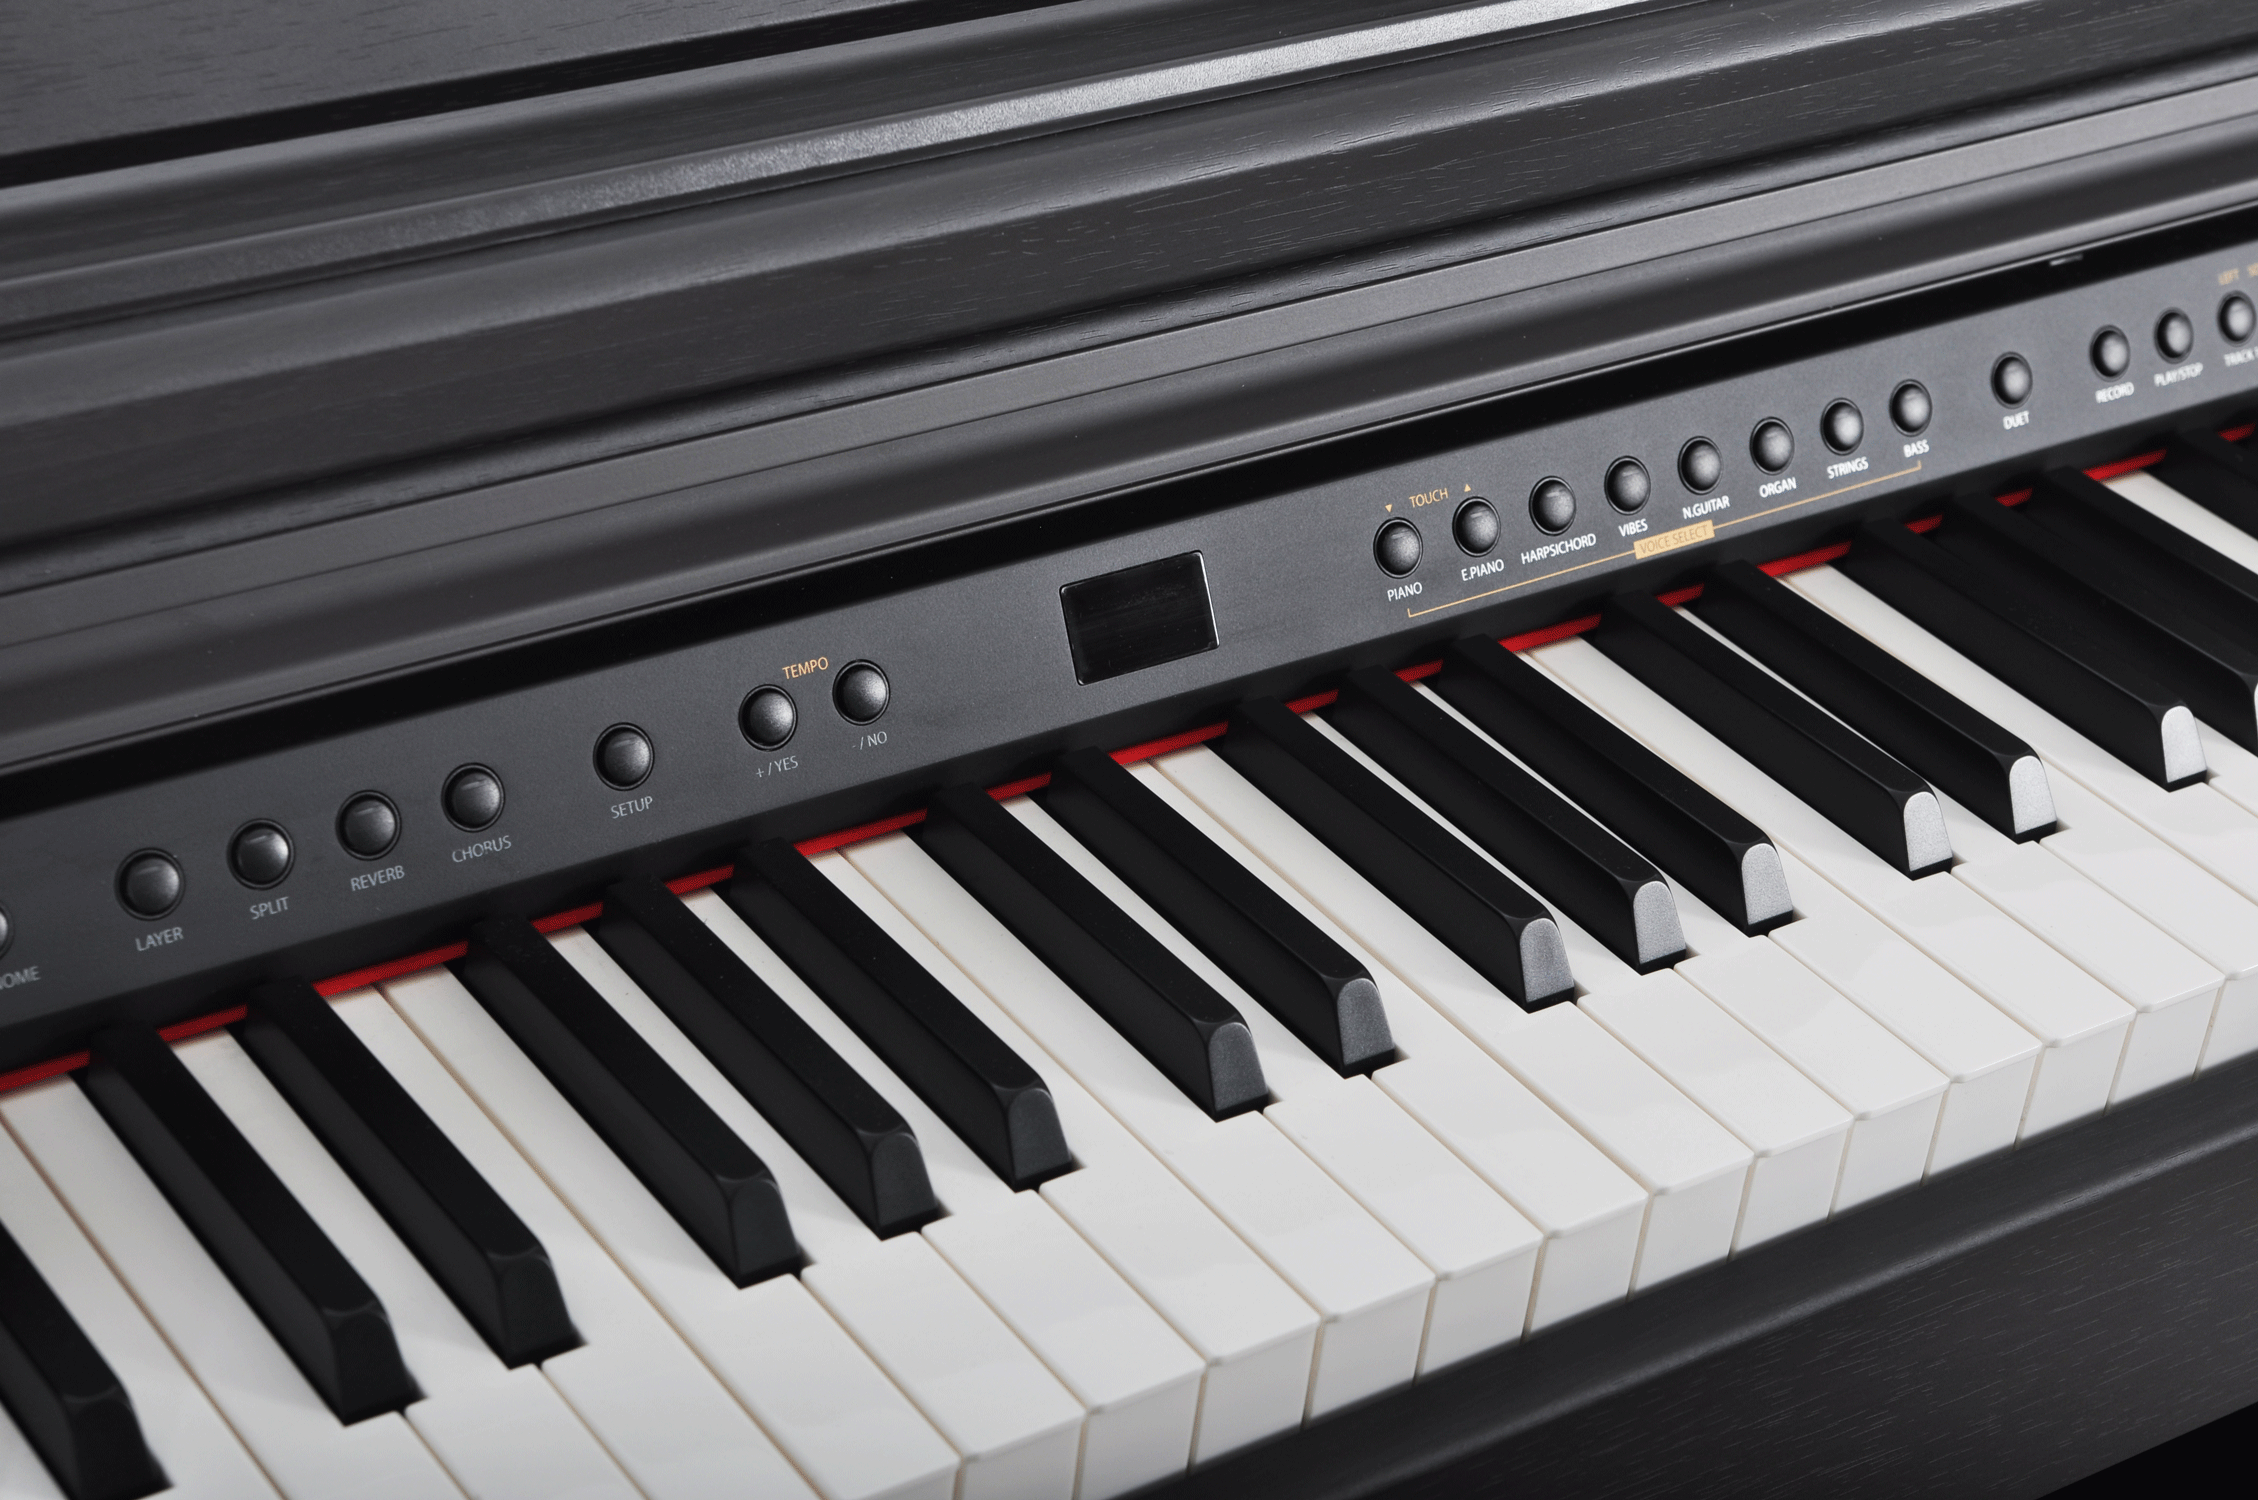 Artesia DP-3 Цифровое фортепиано. Цвет Палисандр. купить в prostore.me